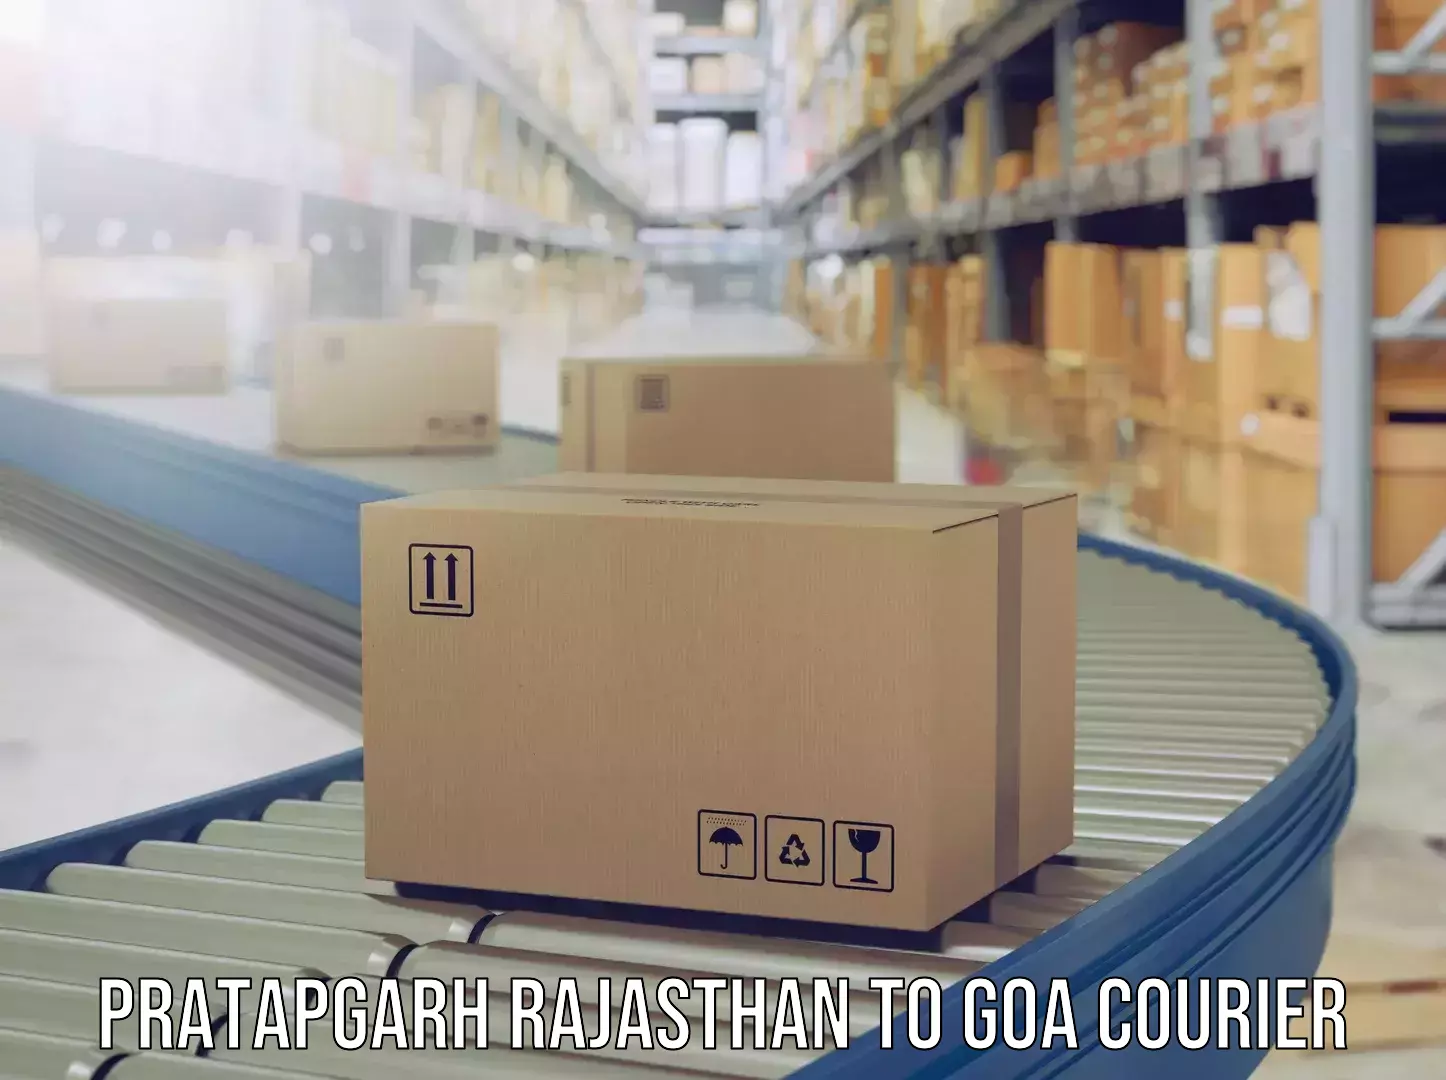 Baggage transport professionals Pratapgarh Rajasthan to IIT Goa